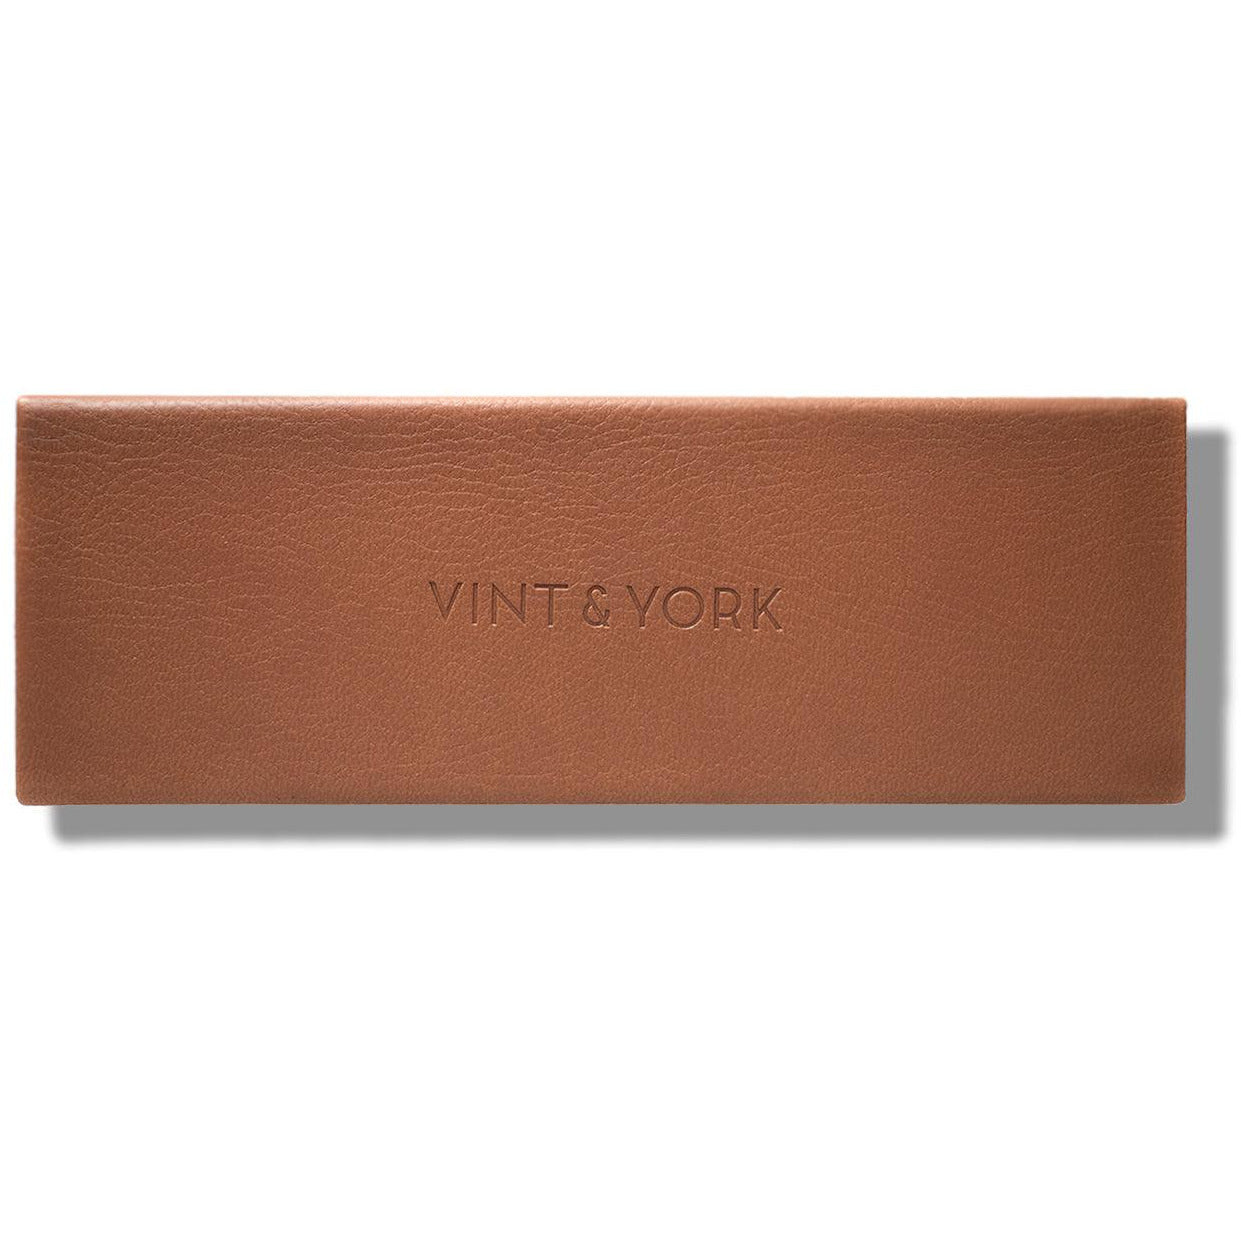 CHESTNUT BROWN CASE from Vint & York